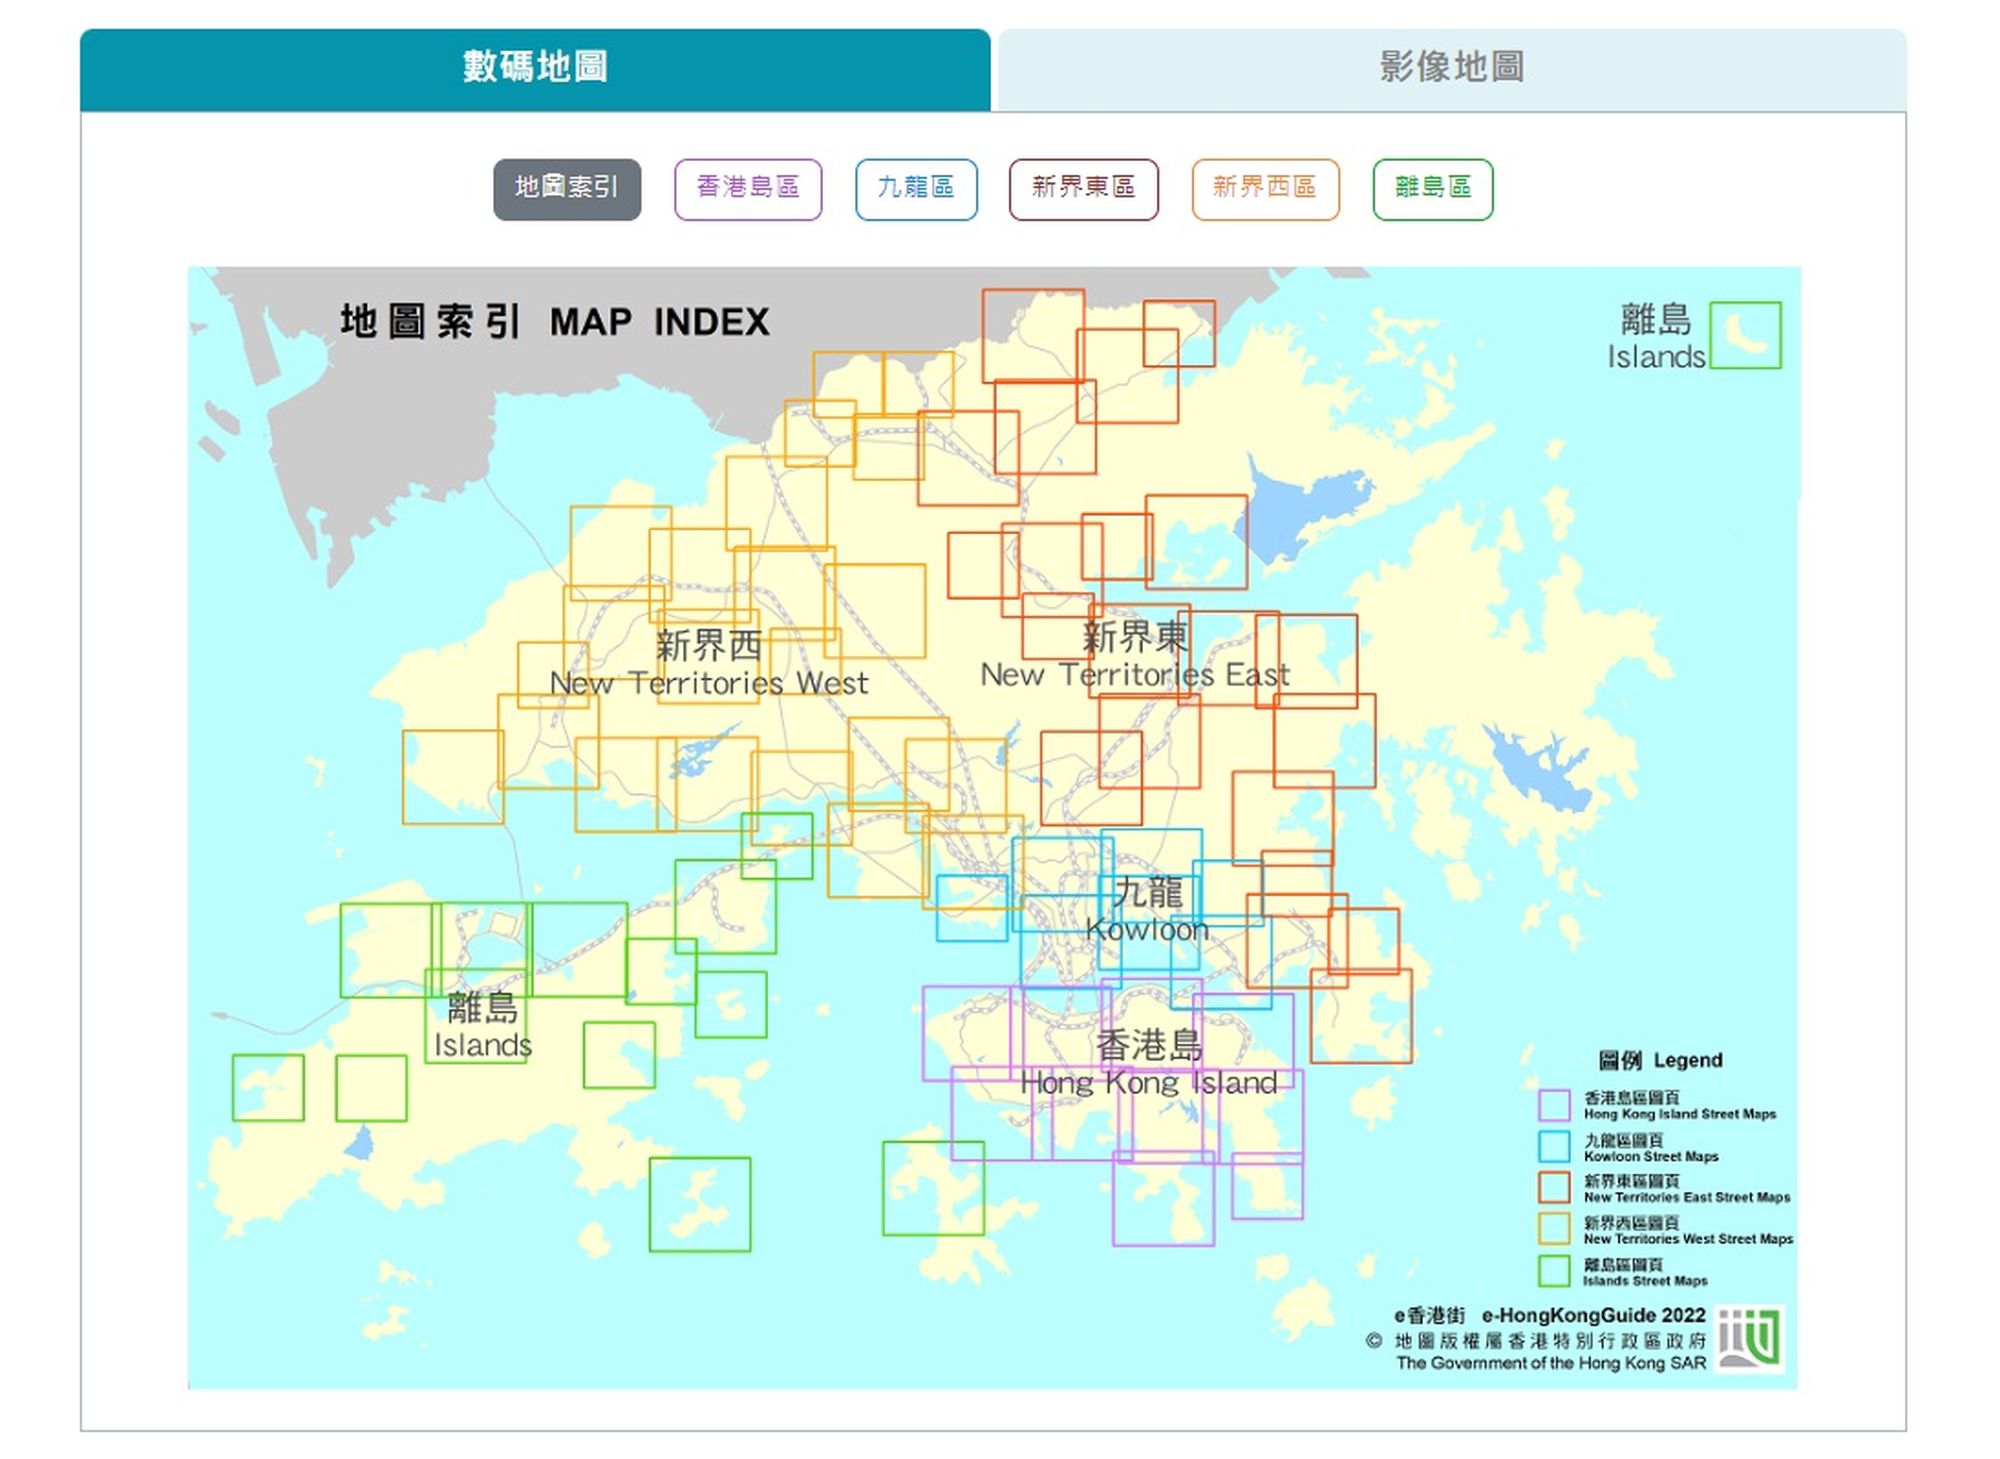 电子版《e香港街》亦上载至地政总署网页，供公众浏览和免费下载。